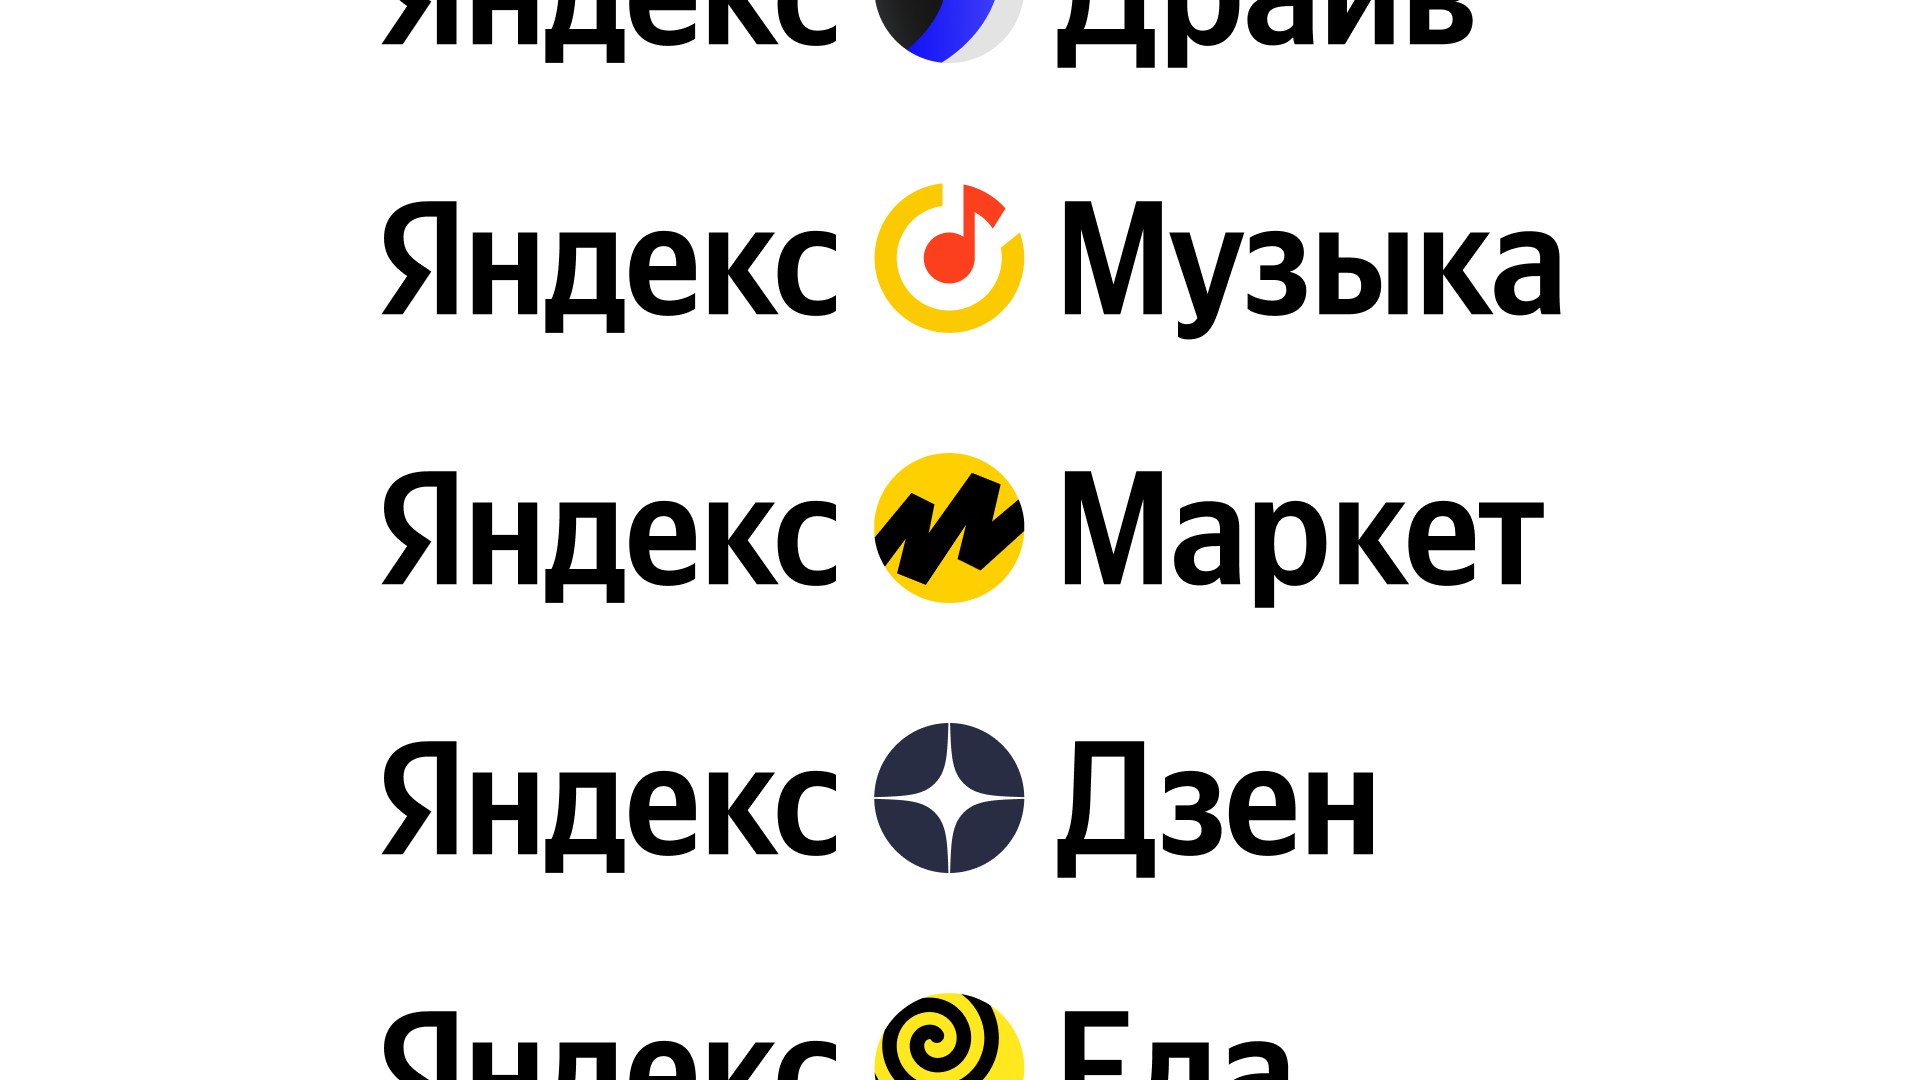 Юниты яндекса. Логотипы сервисов Яндекса.